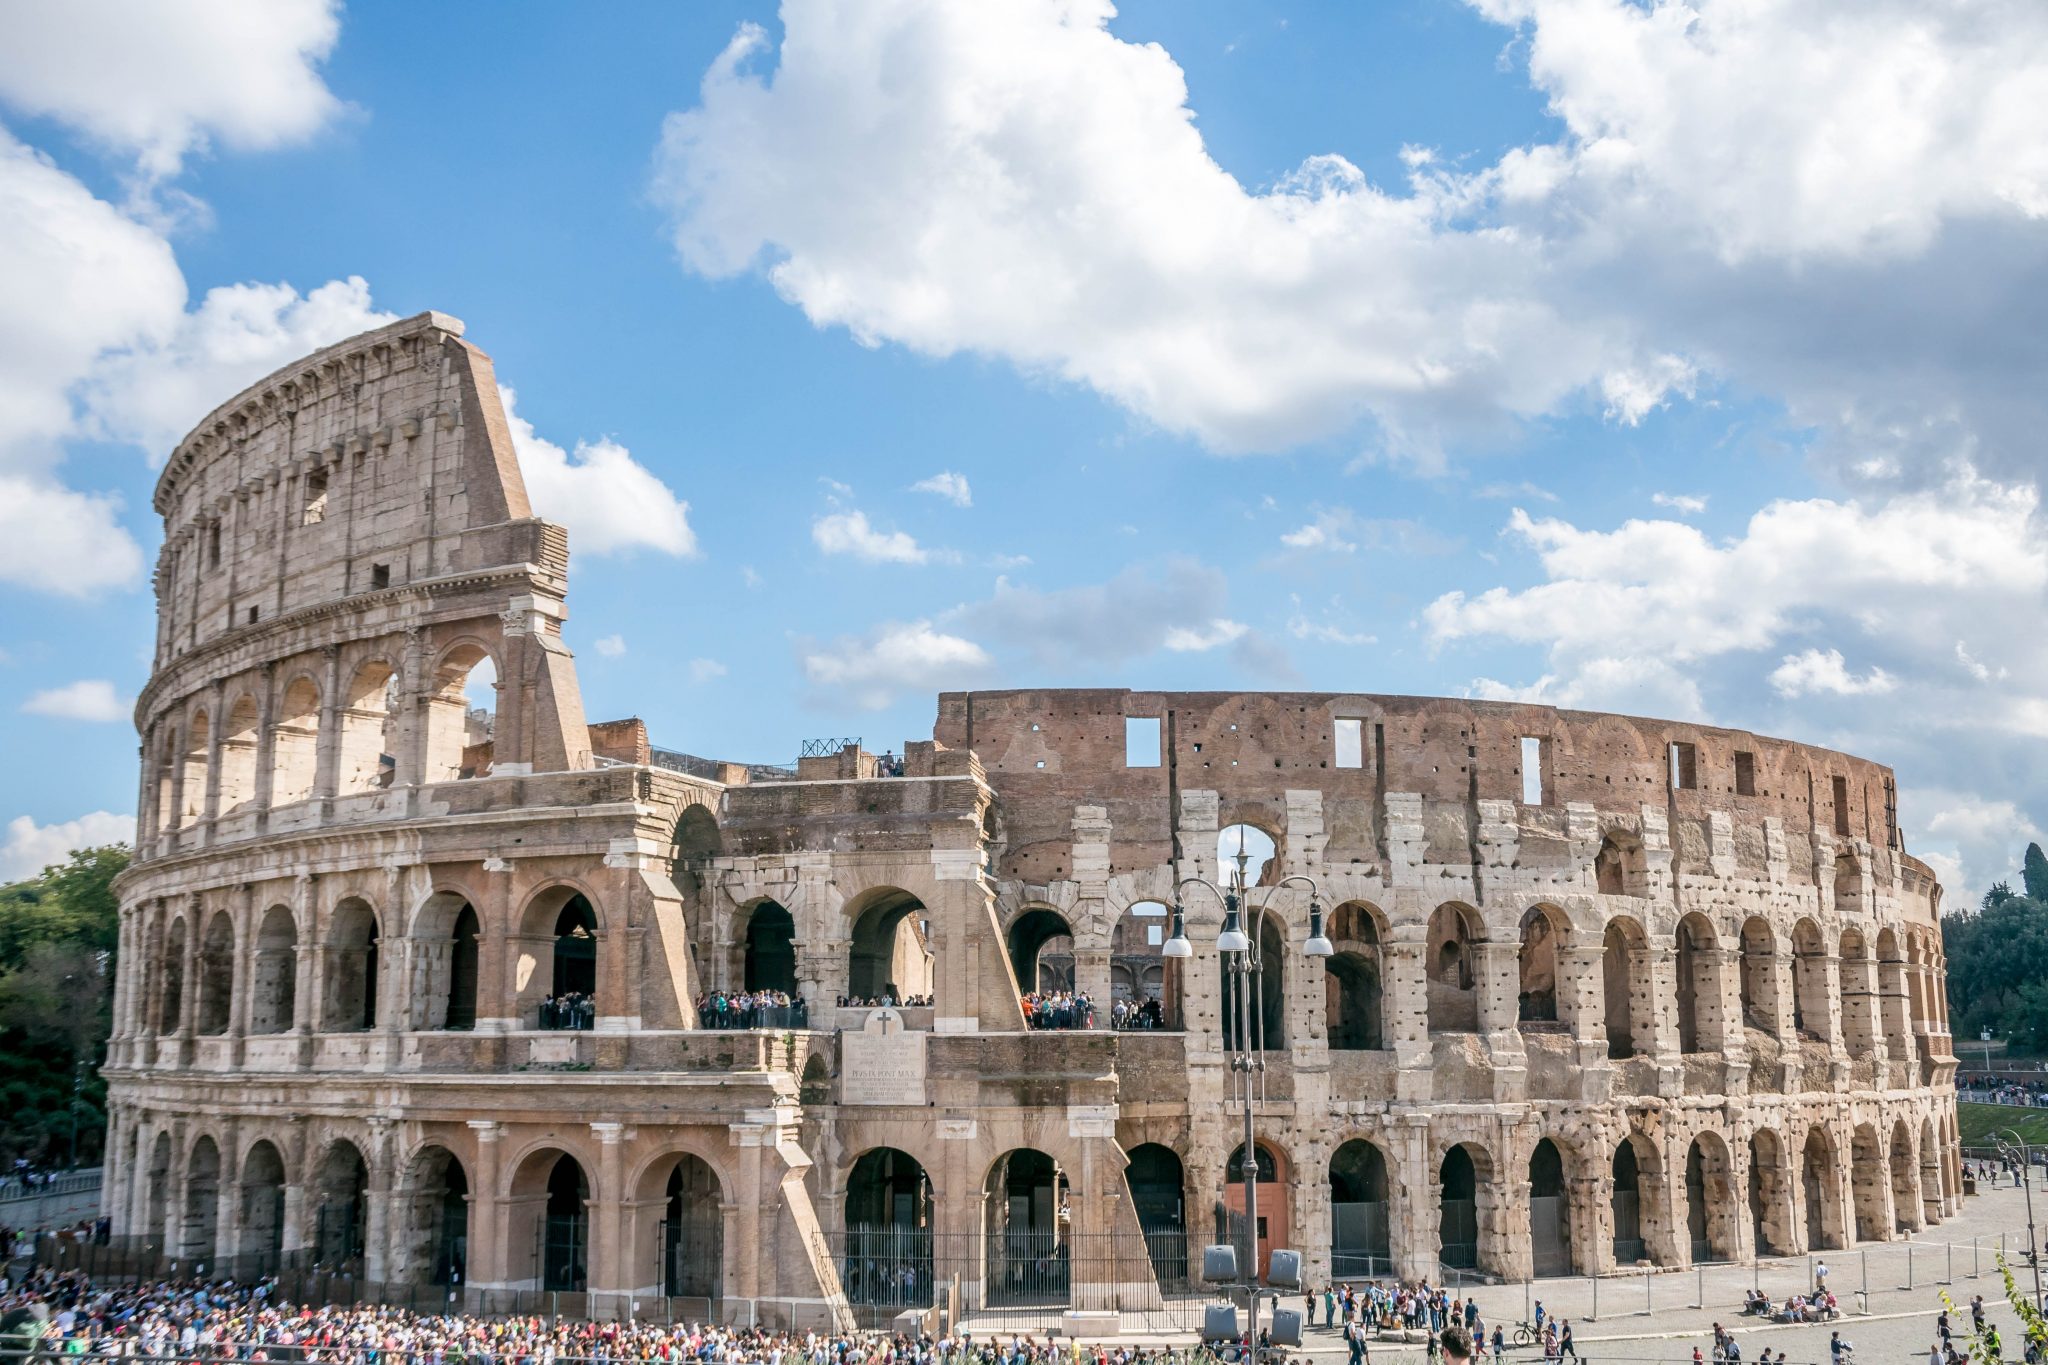  الدراسة في إيطاليا.. كل ما تريد معرفته عن دراسة البكالوريوس في روما